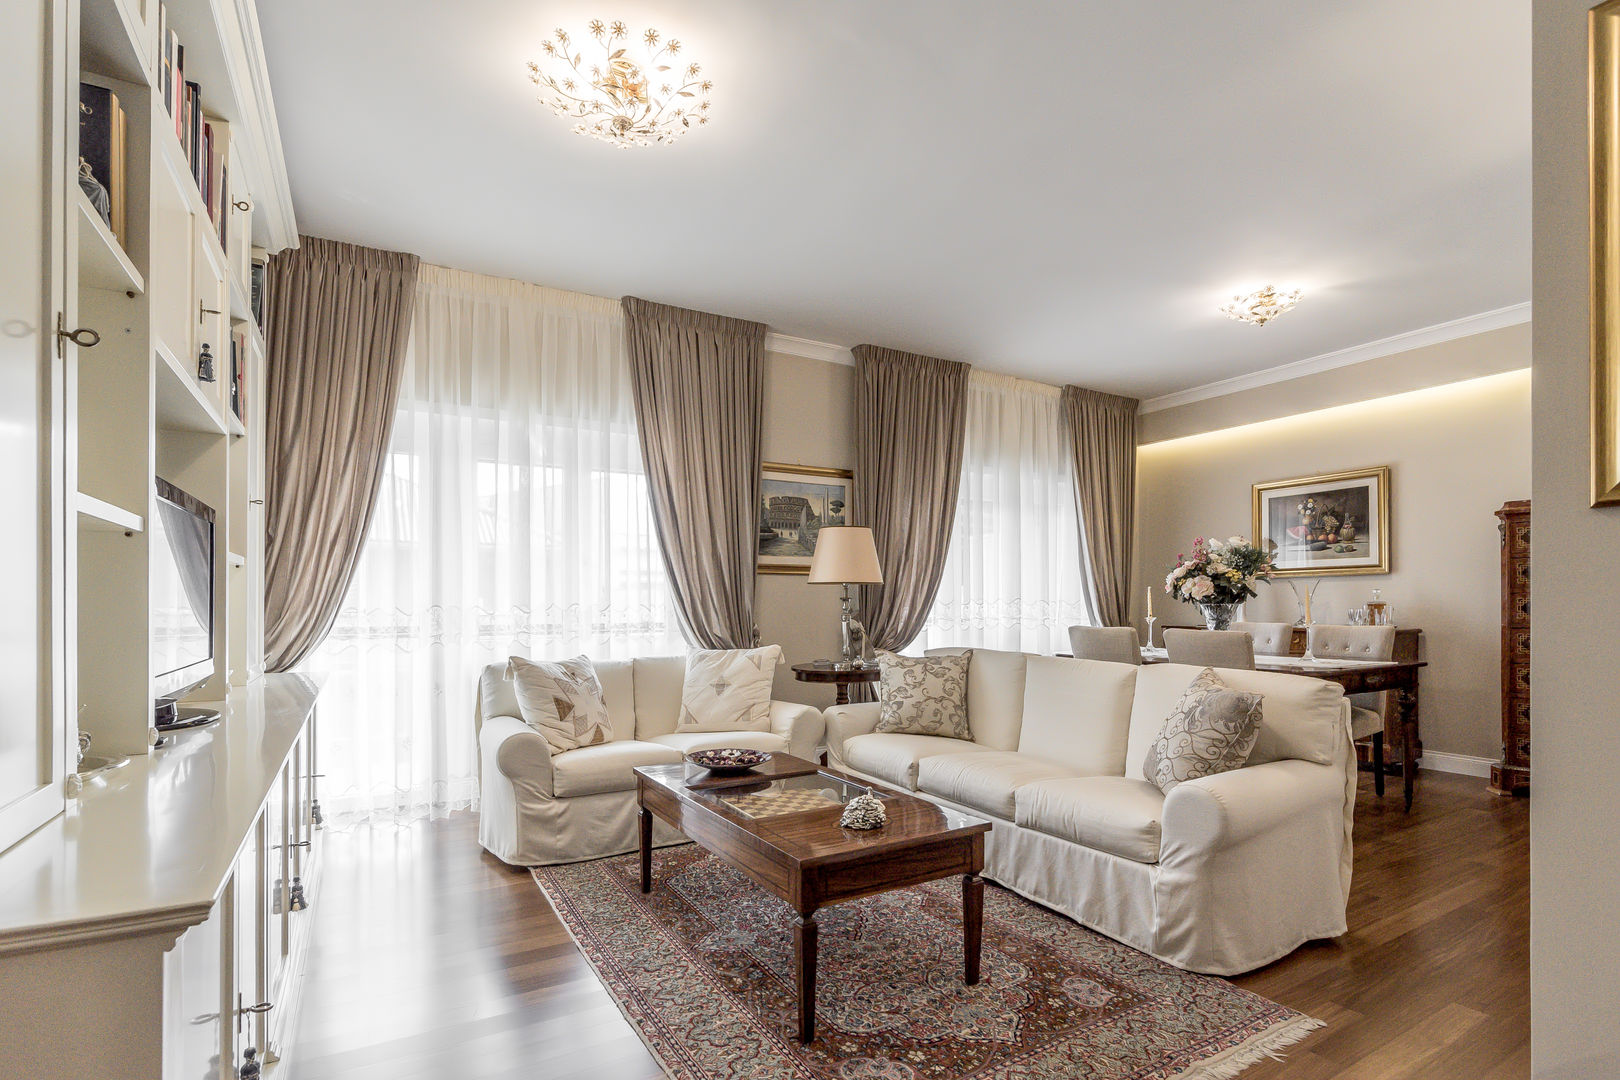 Ristrutturazione appartamento Roma: Nuova disposizione degli spazi, Facile Ristrutturare Facile Ristrutturare Classic style living room